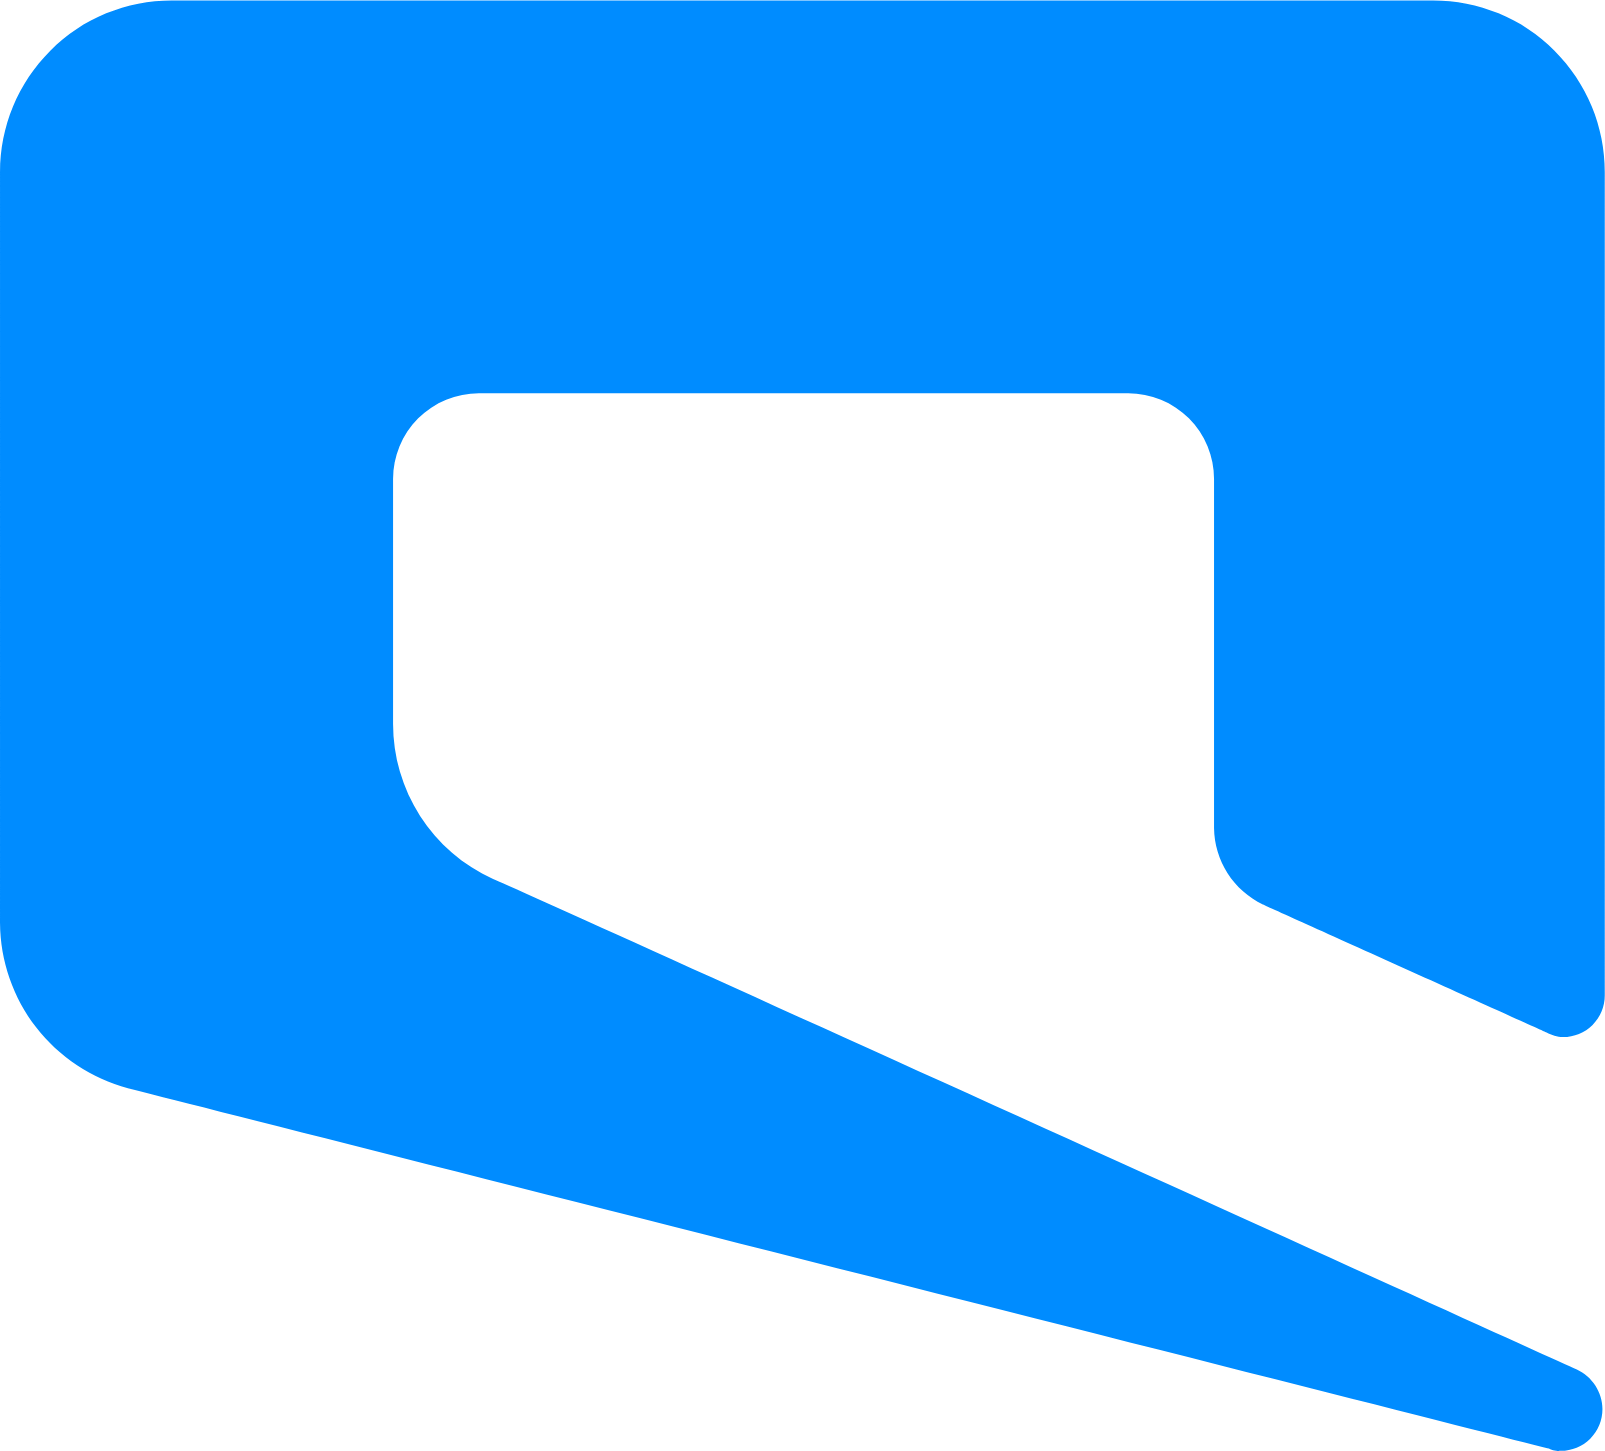 Etihad Etisalat (Mobily) Logo (transparentes PNG)